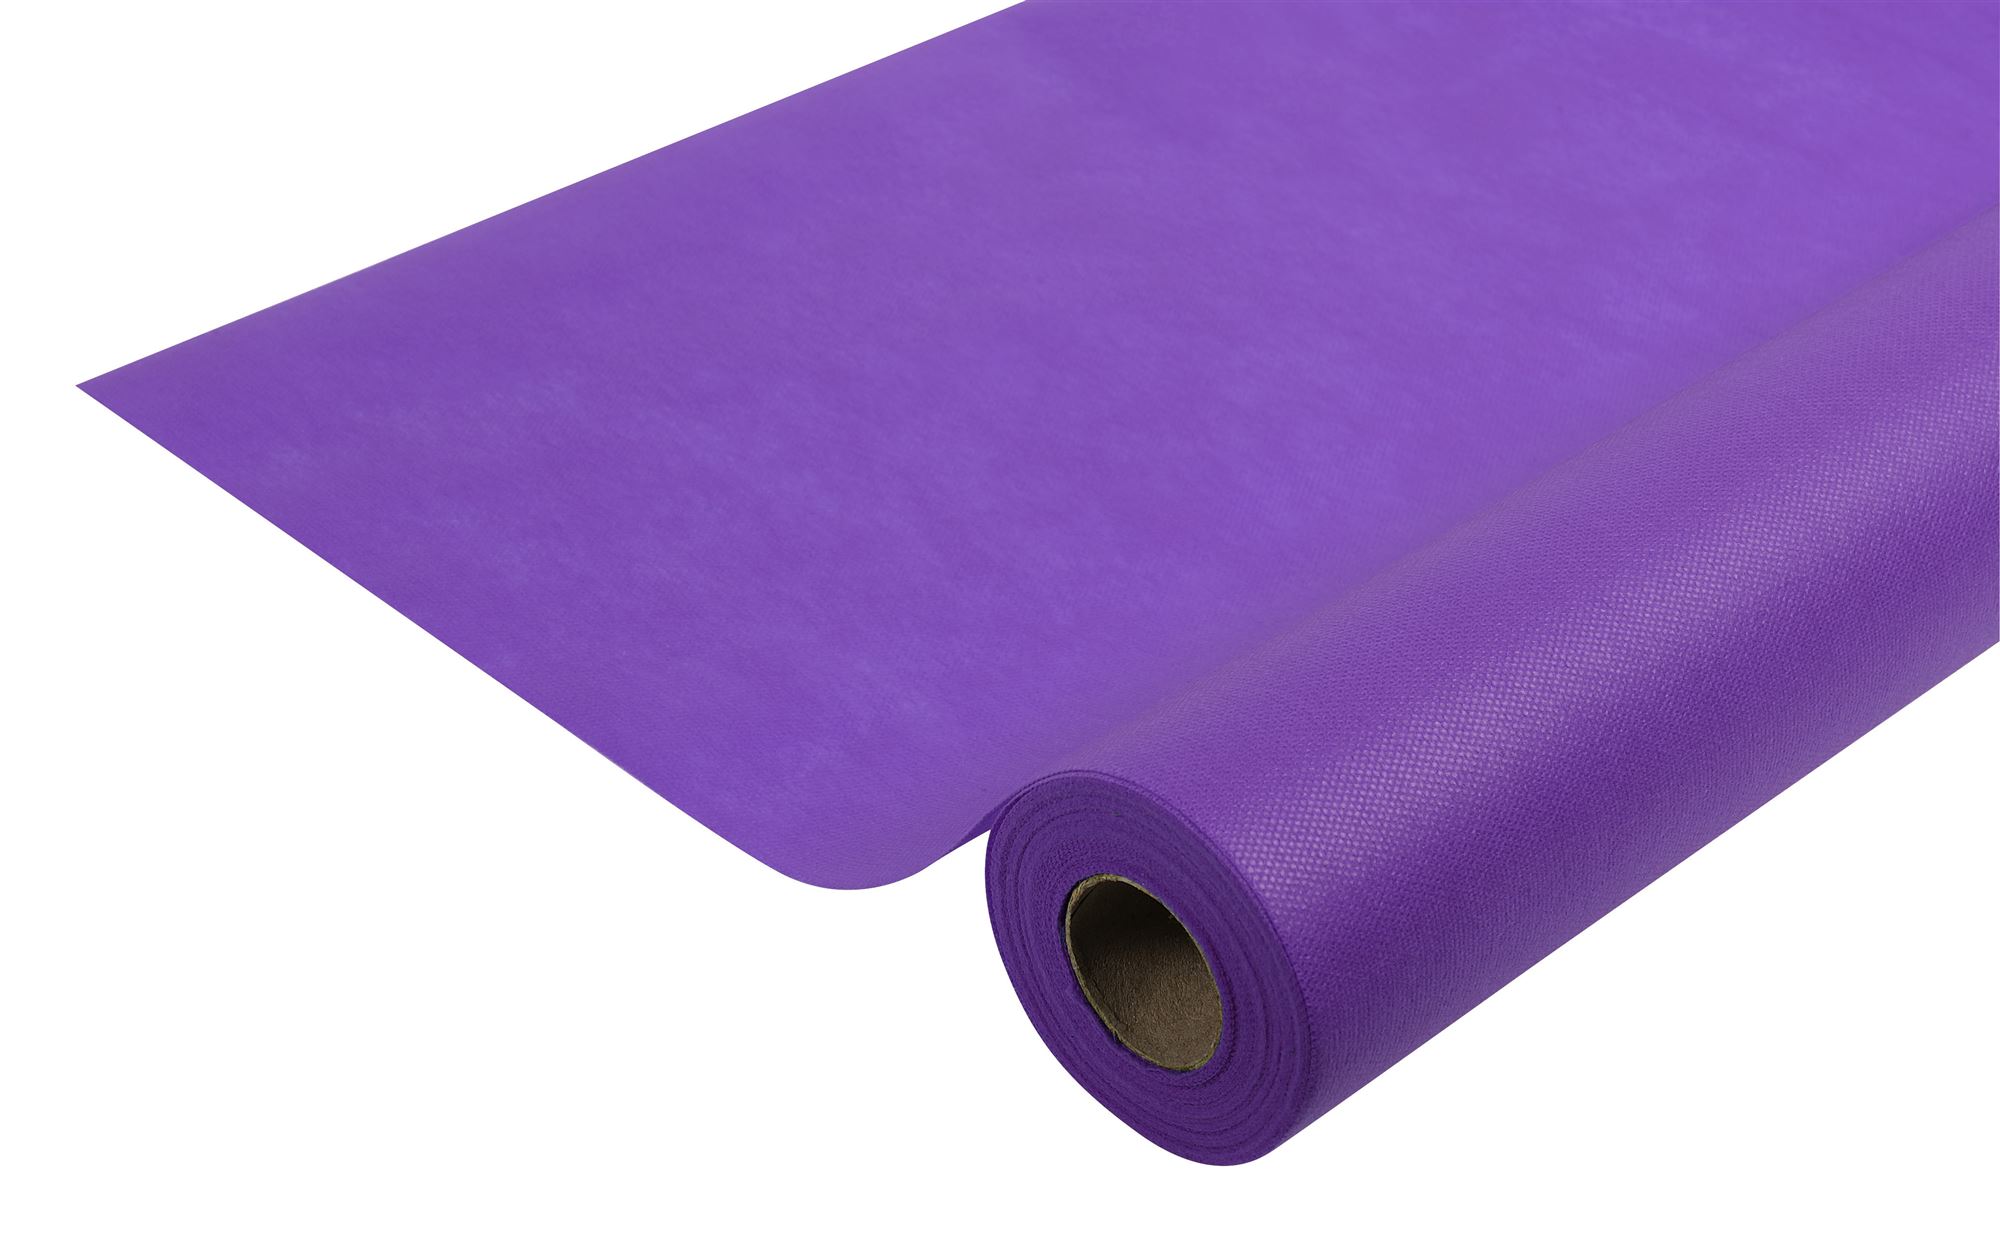  Spunbond  50m purple tablecloth